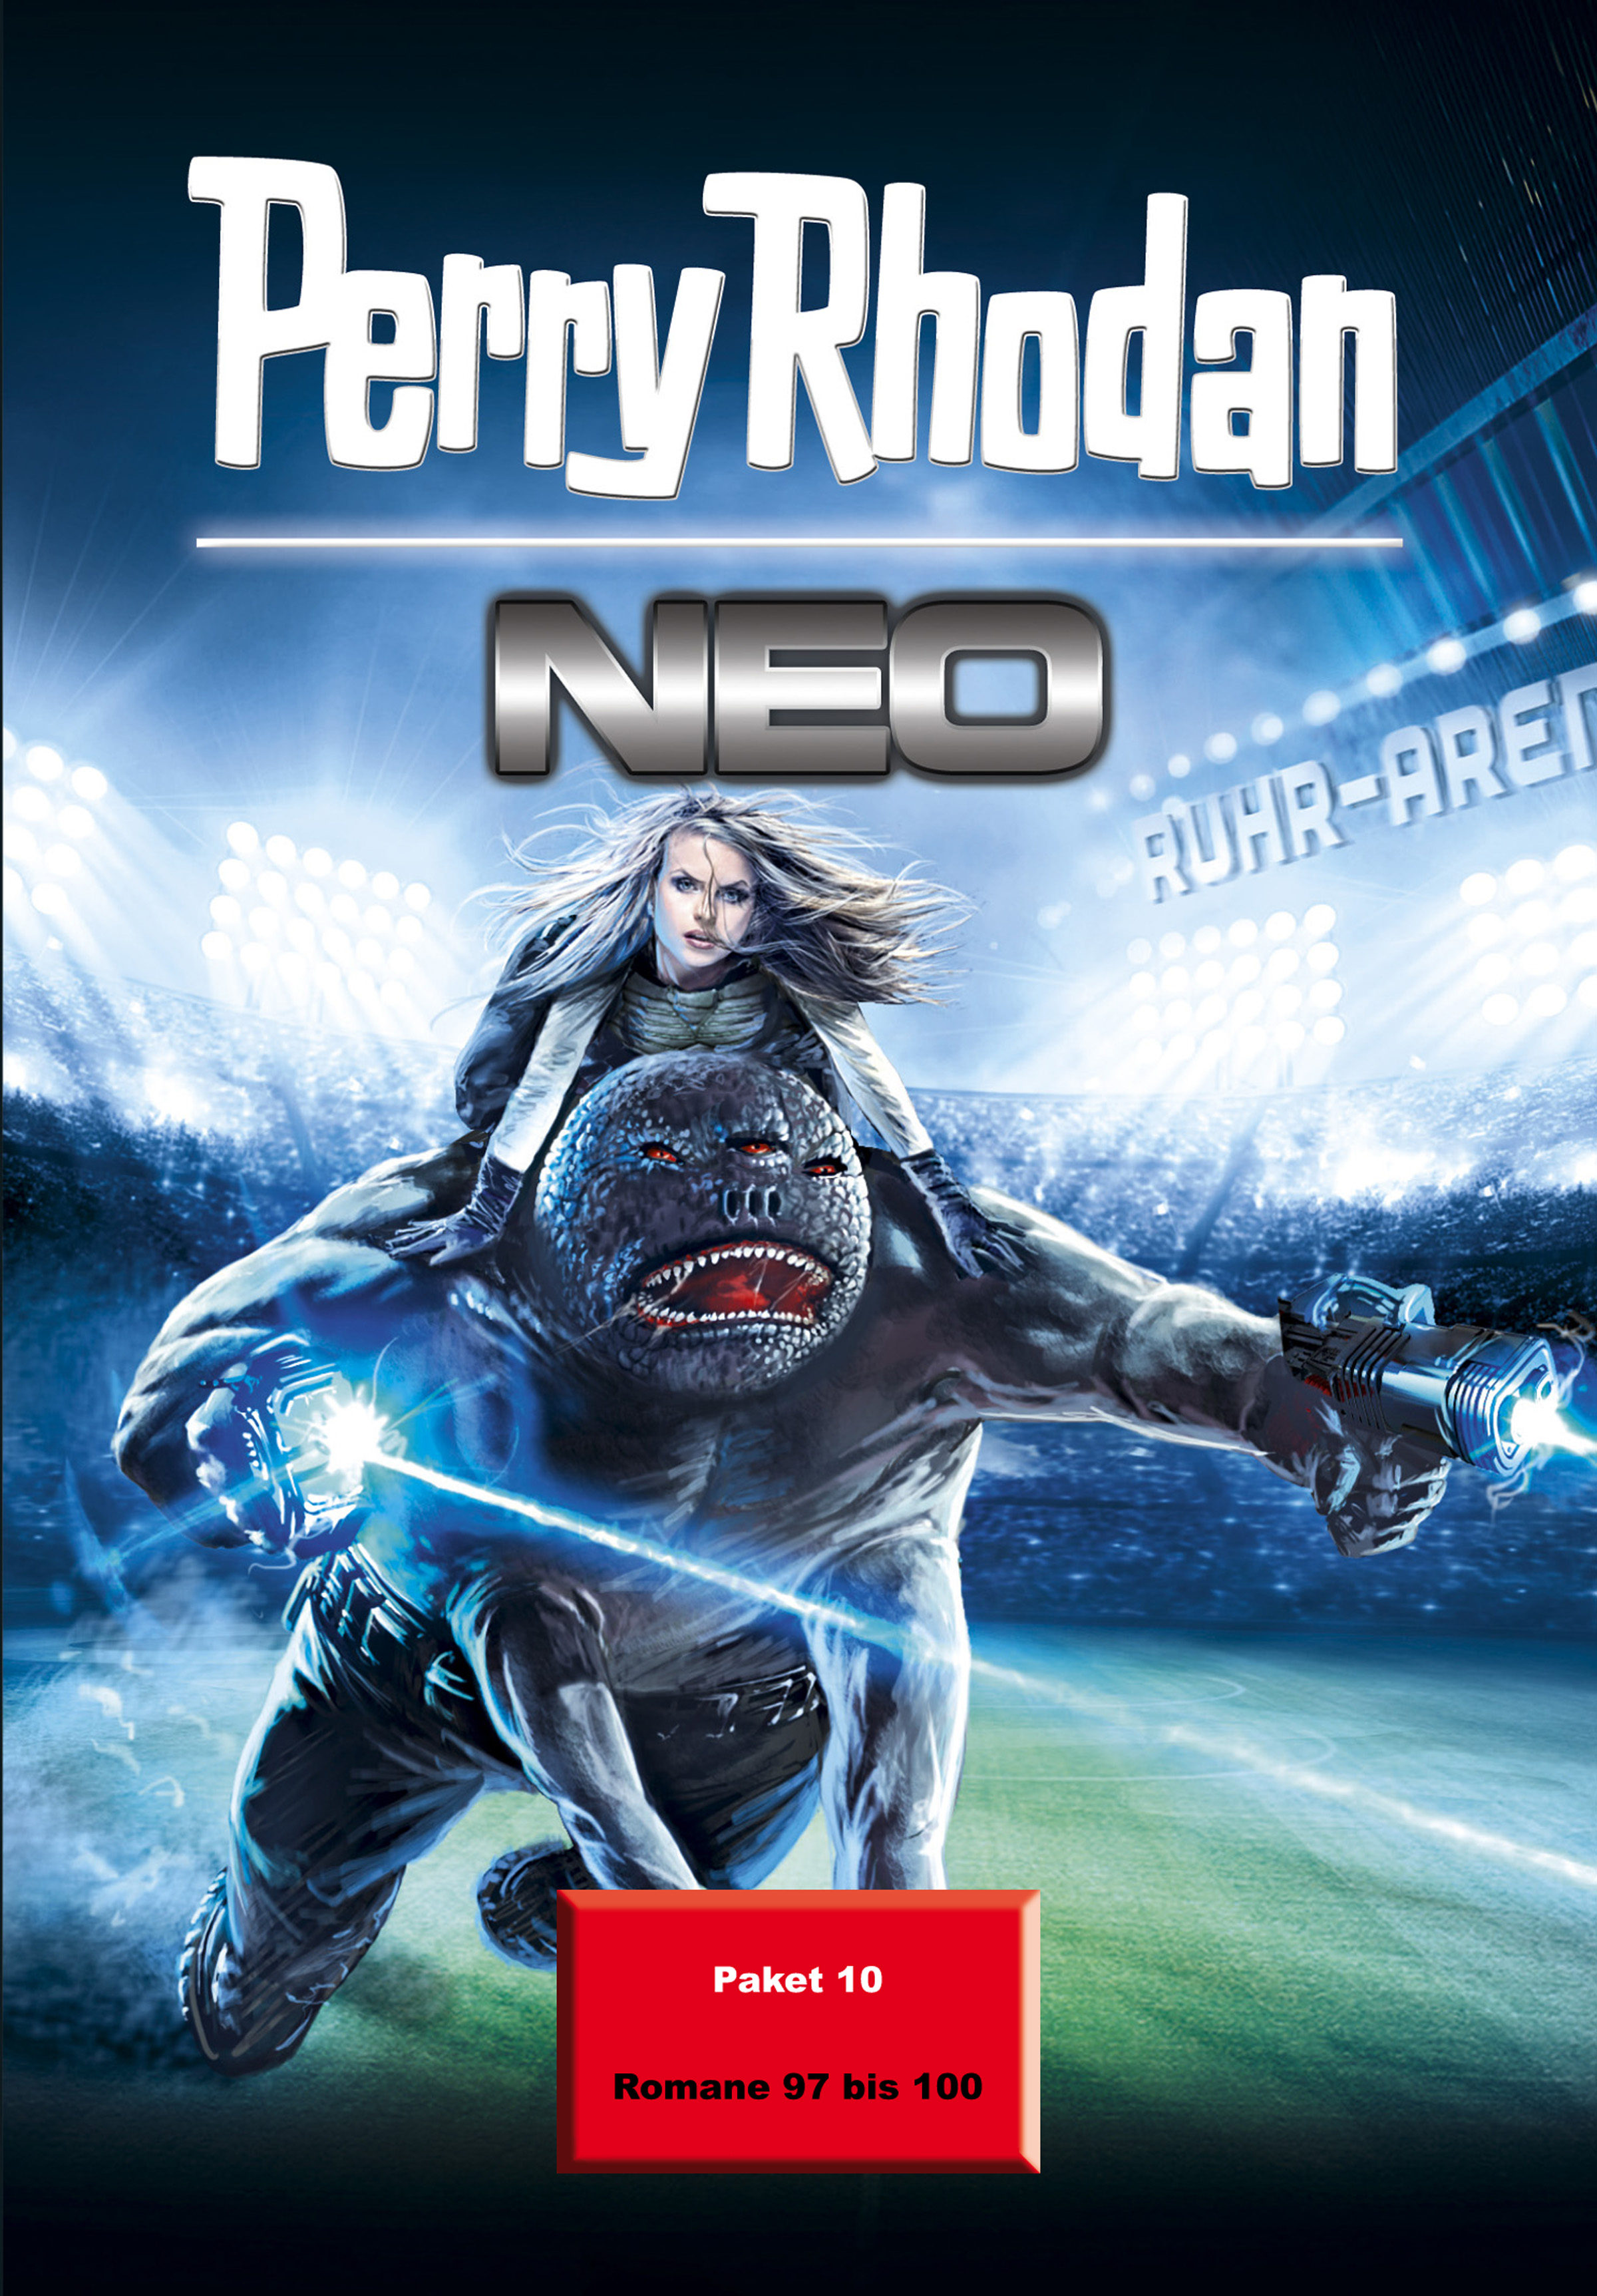 Perry Rhodan Neo 1 by Frank Borsch